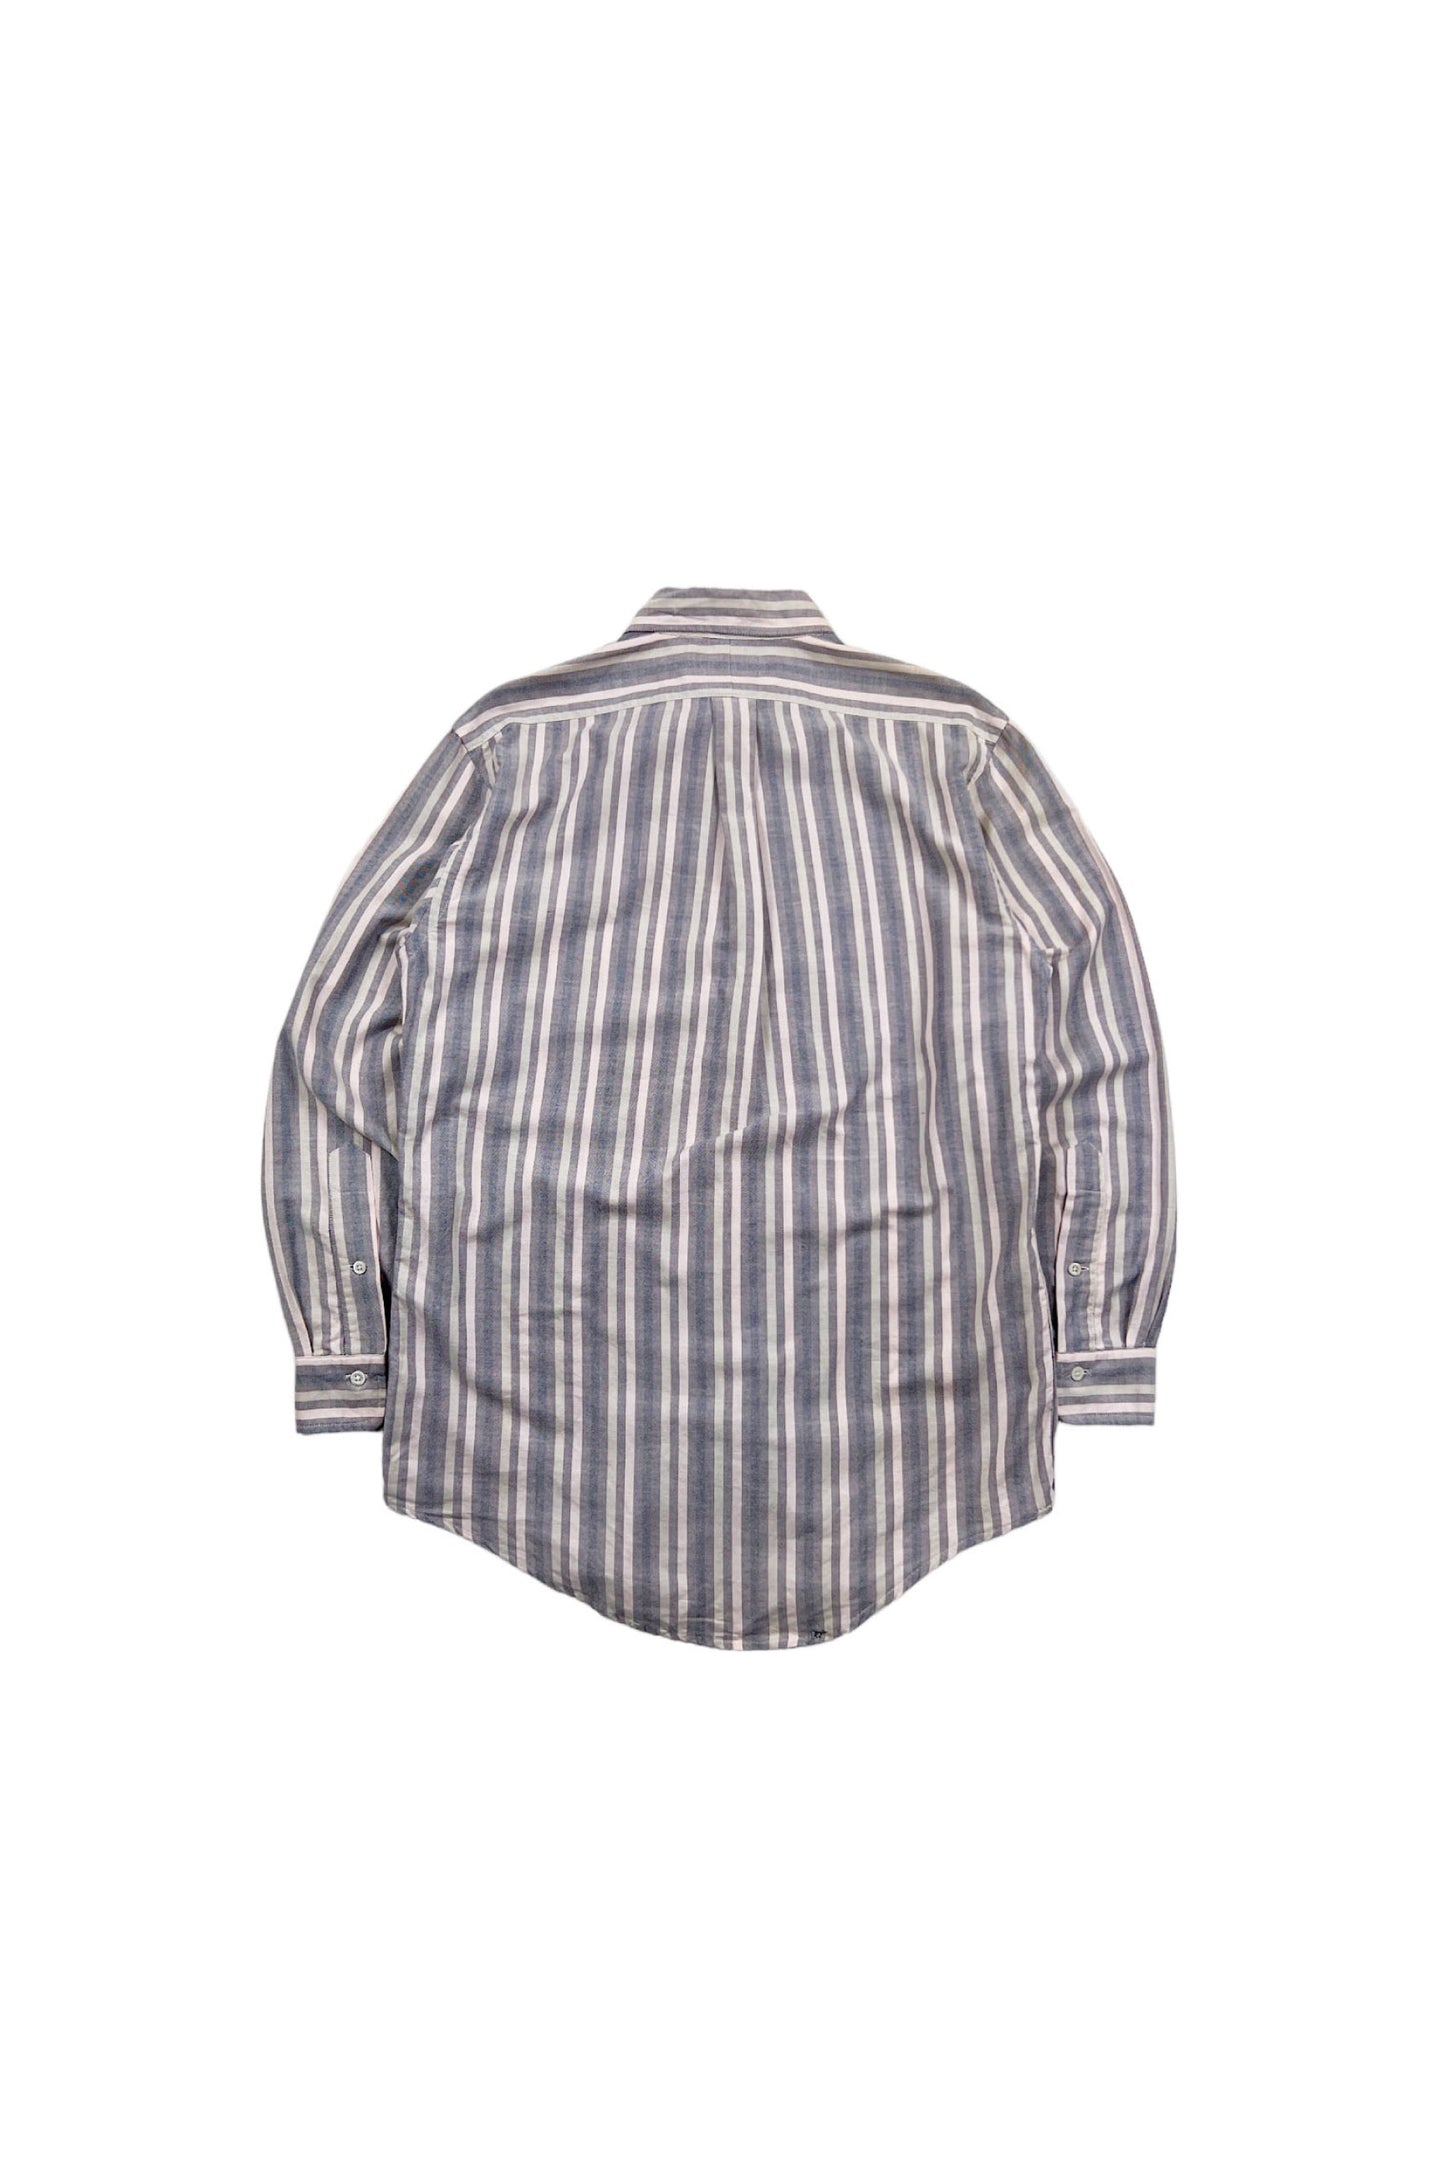 90‘s Ralph Lauren stripe shirt